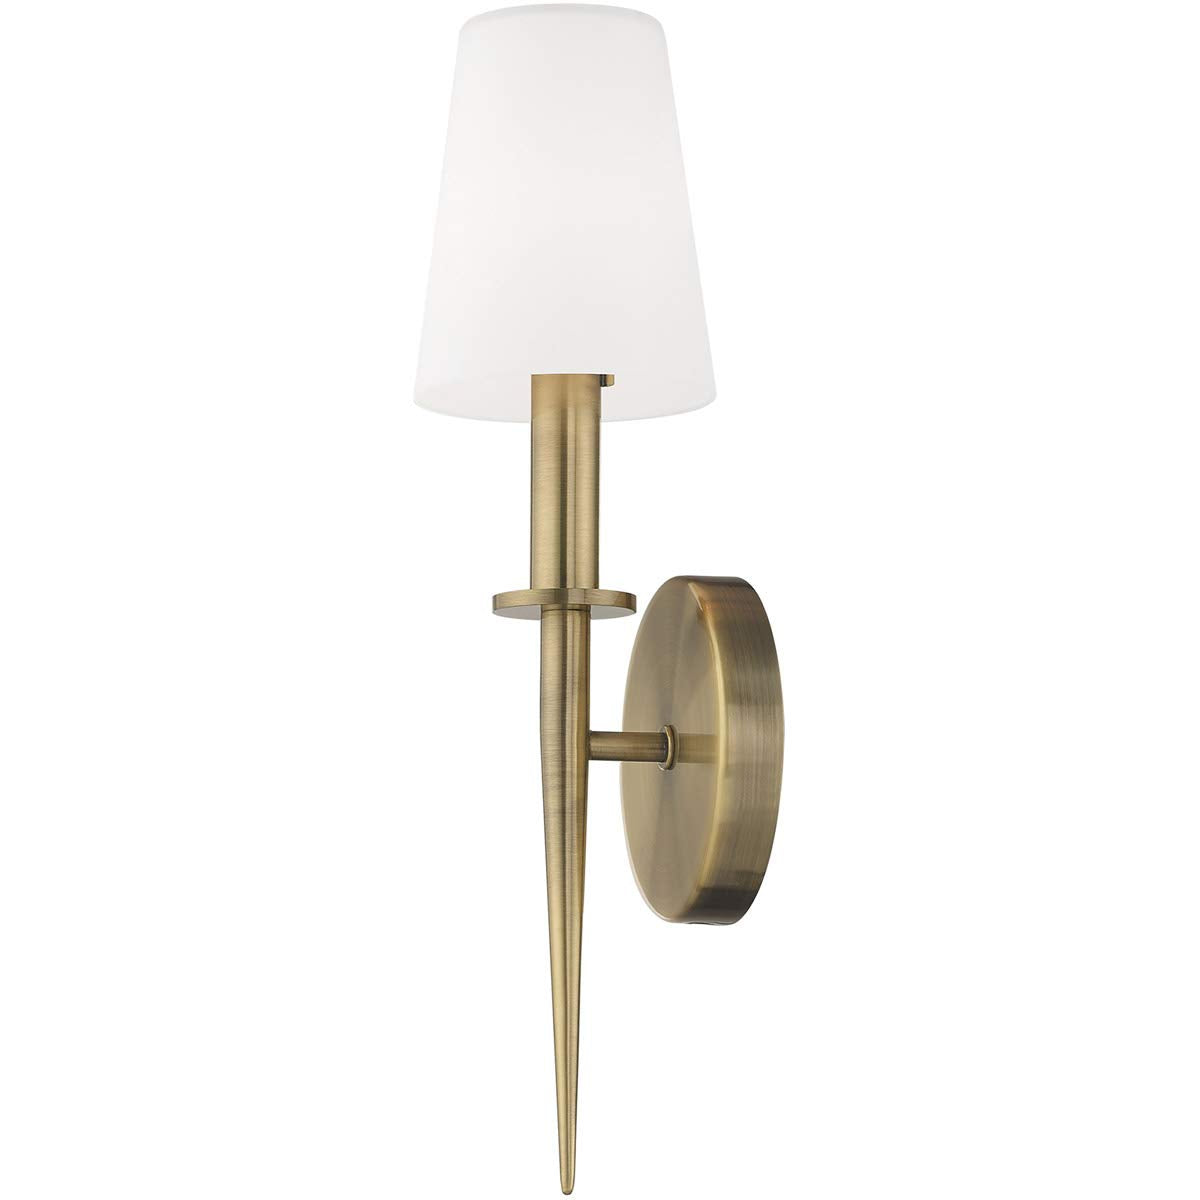 Livex Lighting 41692-01 Witten Antique Brass 1 Light Ada Wall Sconce